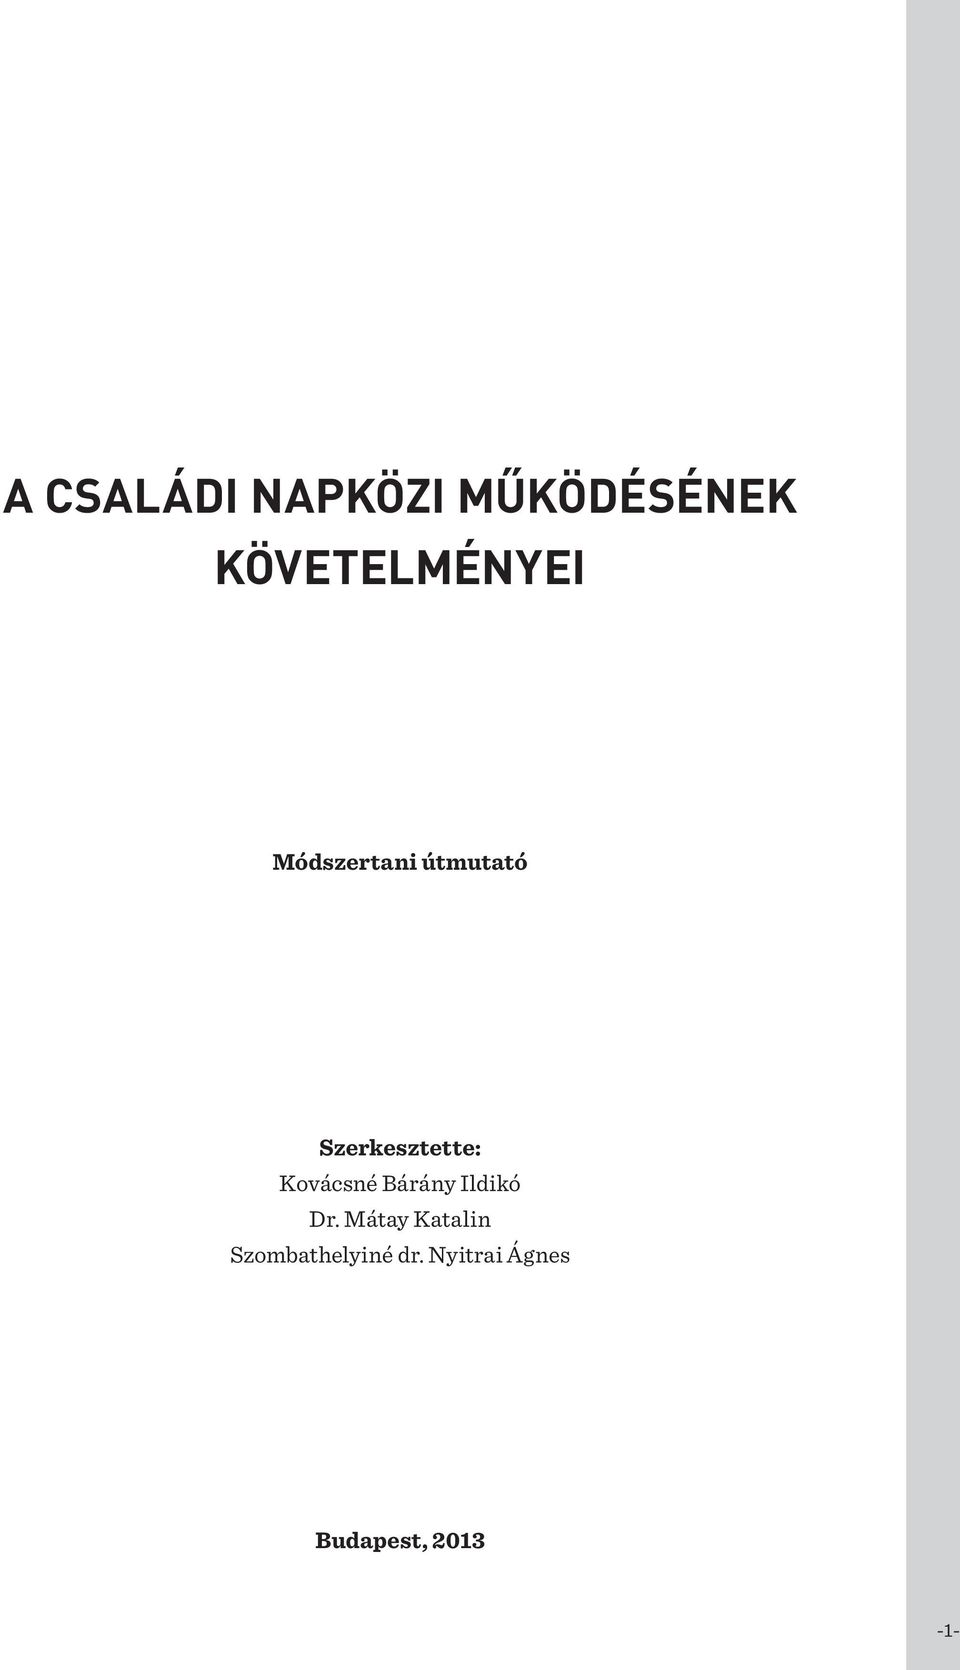 Szerkesztette: Kovácsné Bárány Ildikó Dr.